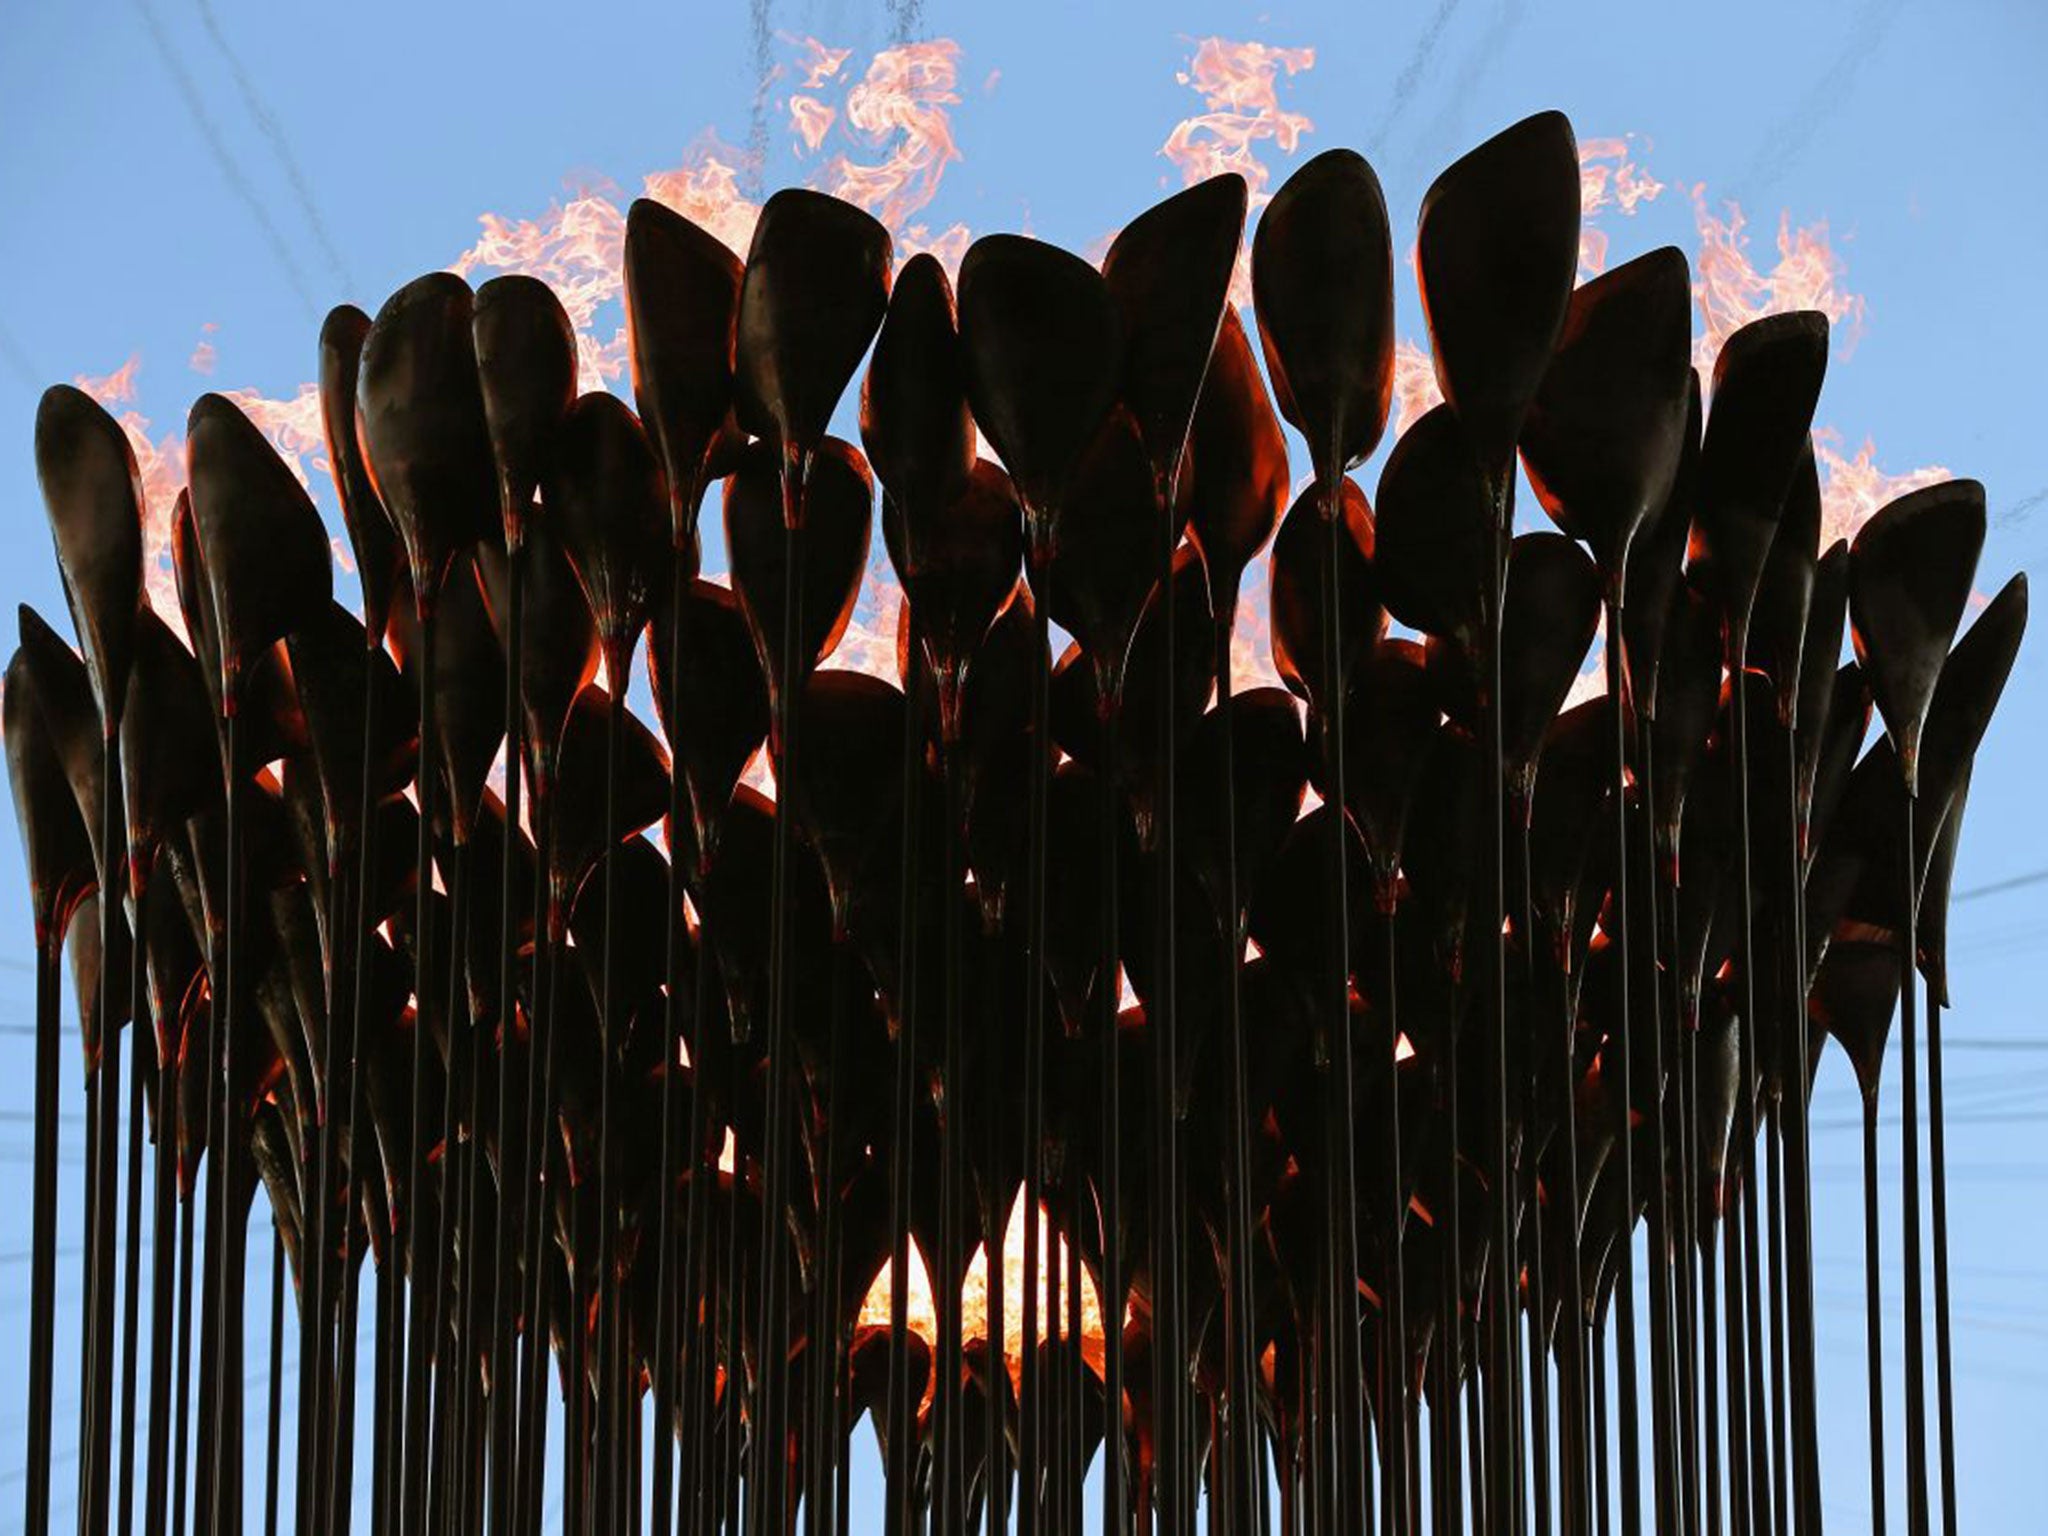 Thomas Heatherwick designed the Olympic Cauldron for London 2012